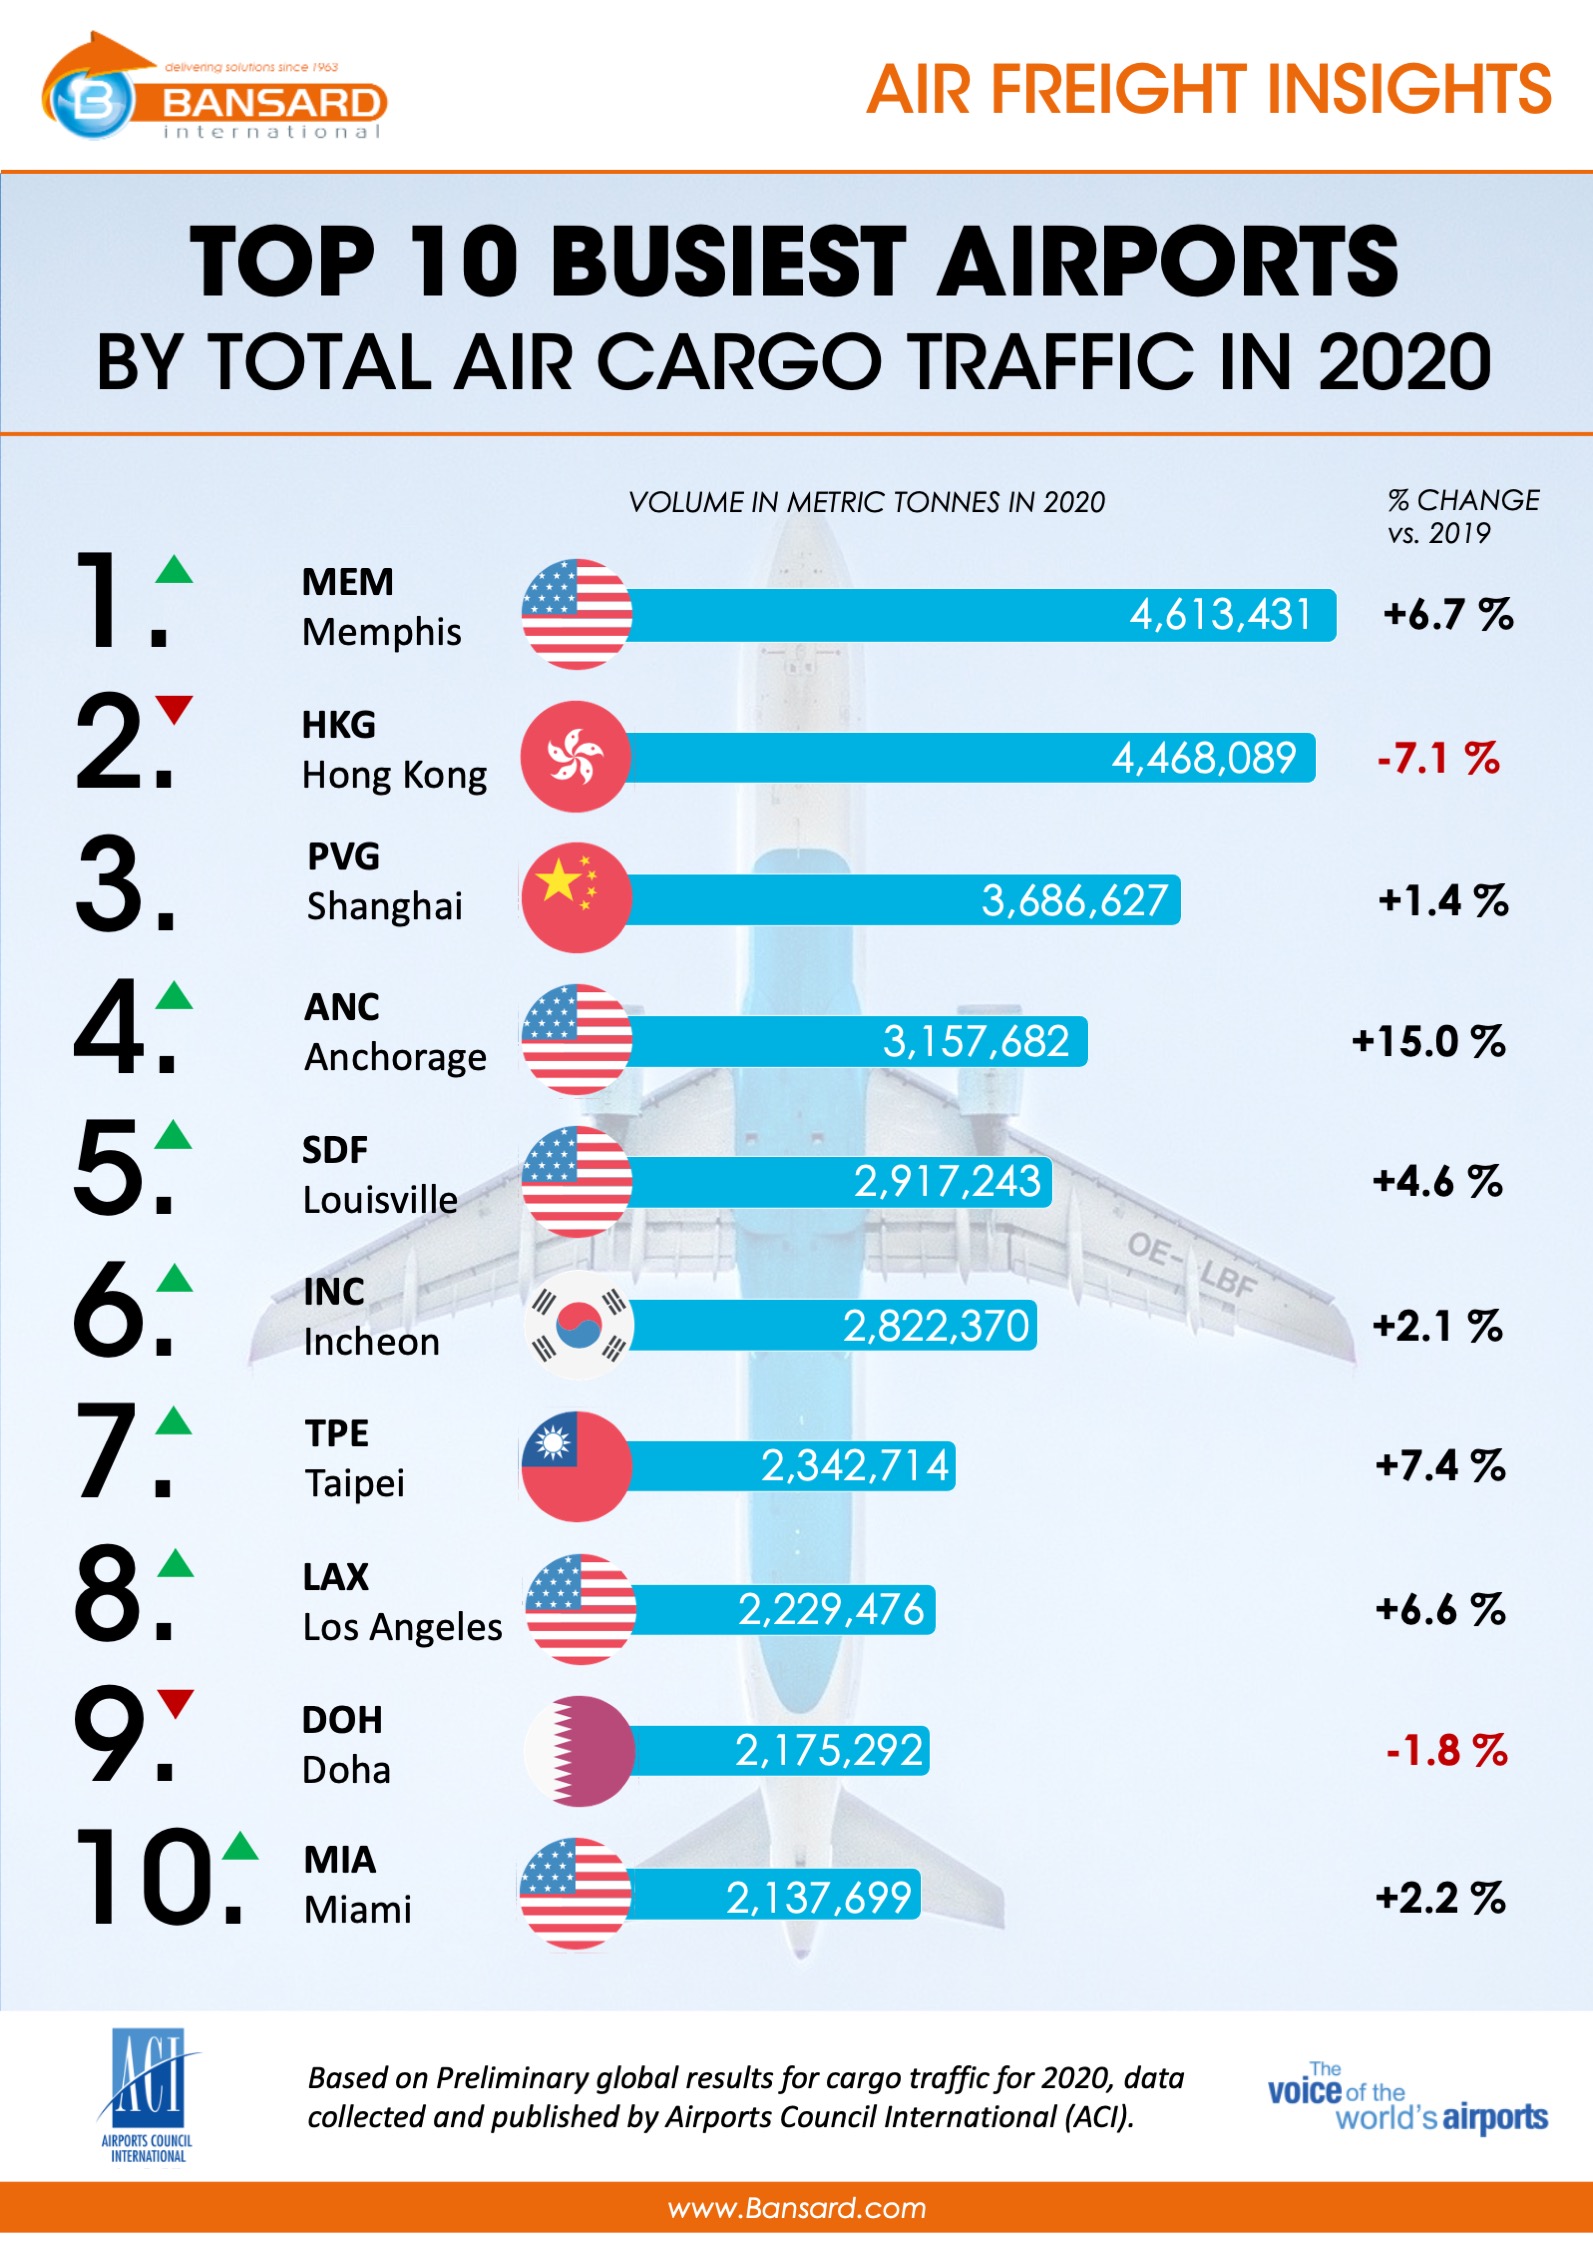 Top 10 des Aéroports de Fret Aérien les plus fréquentés en 2020